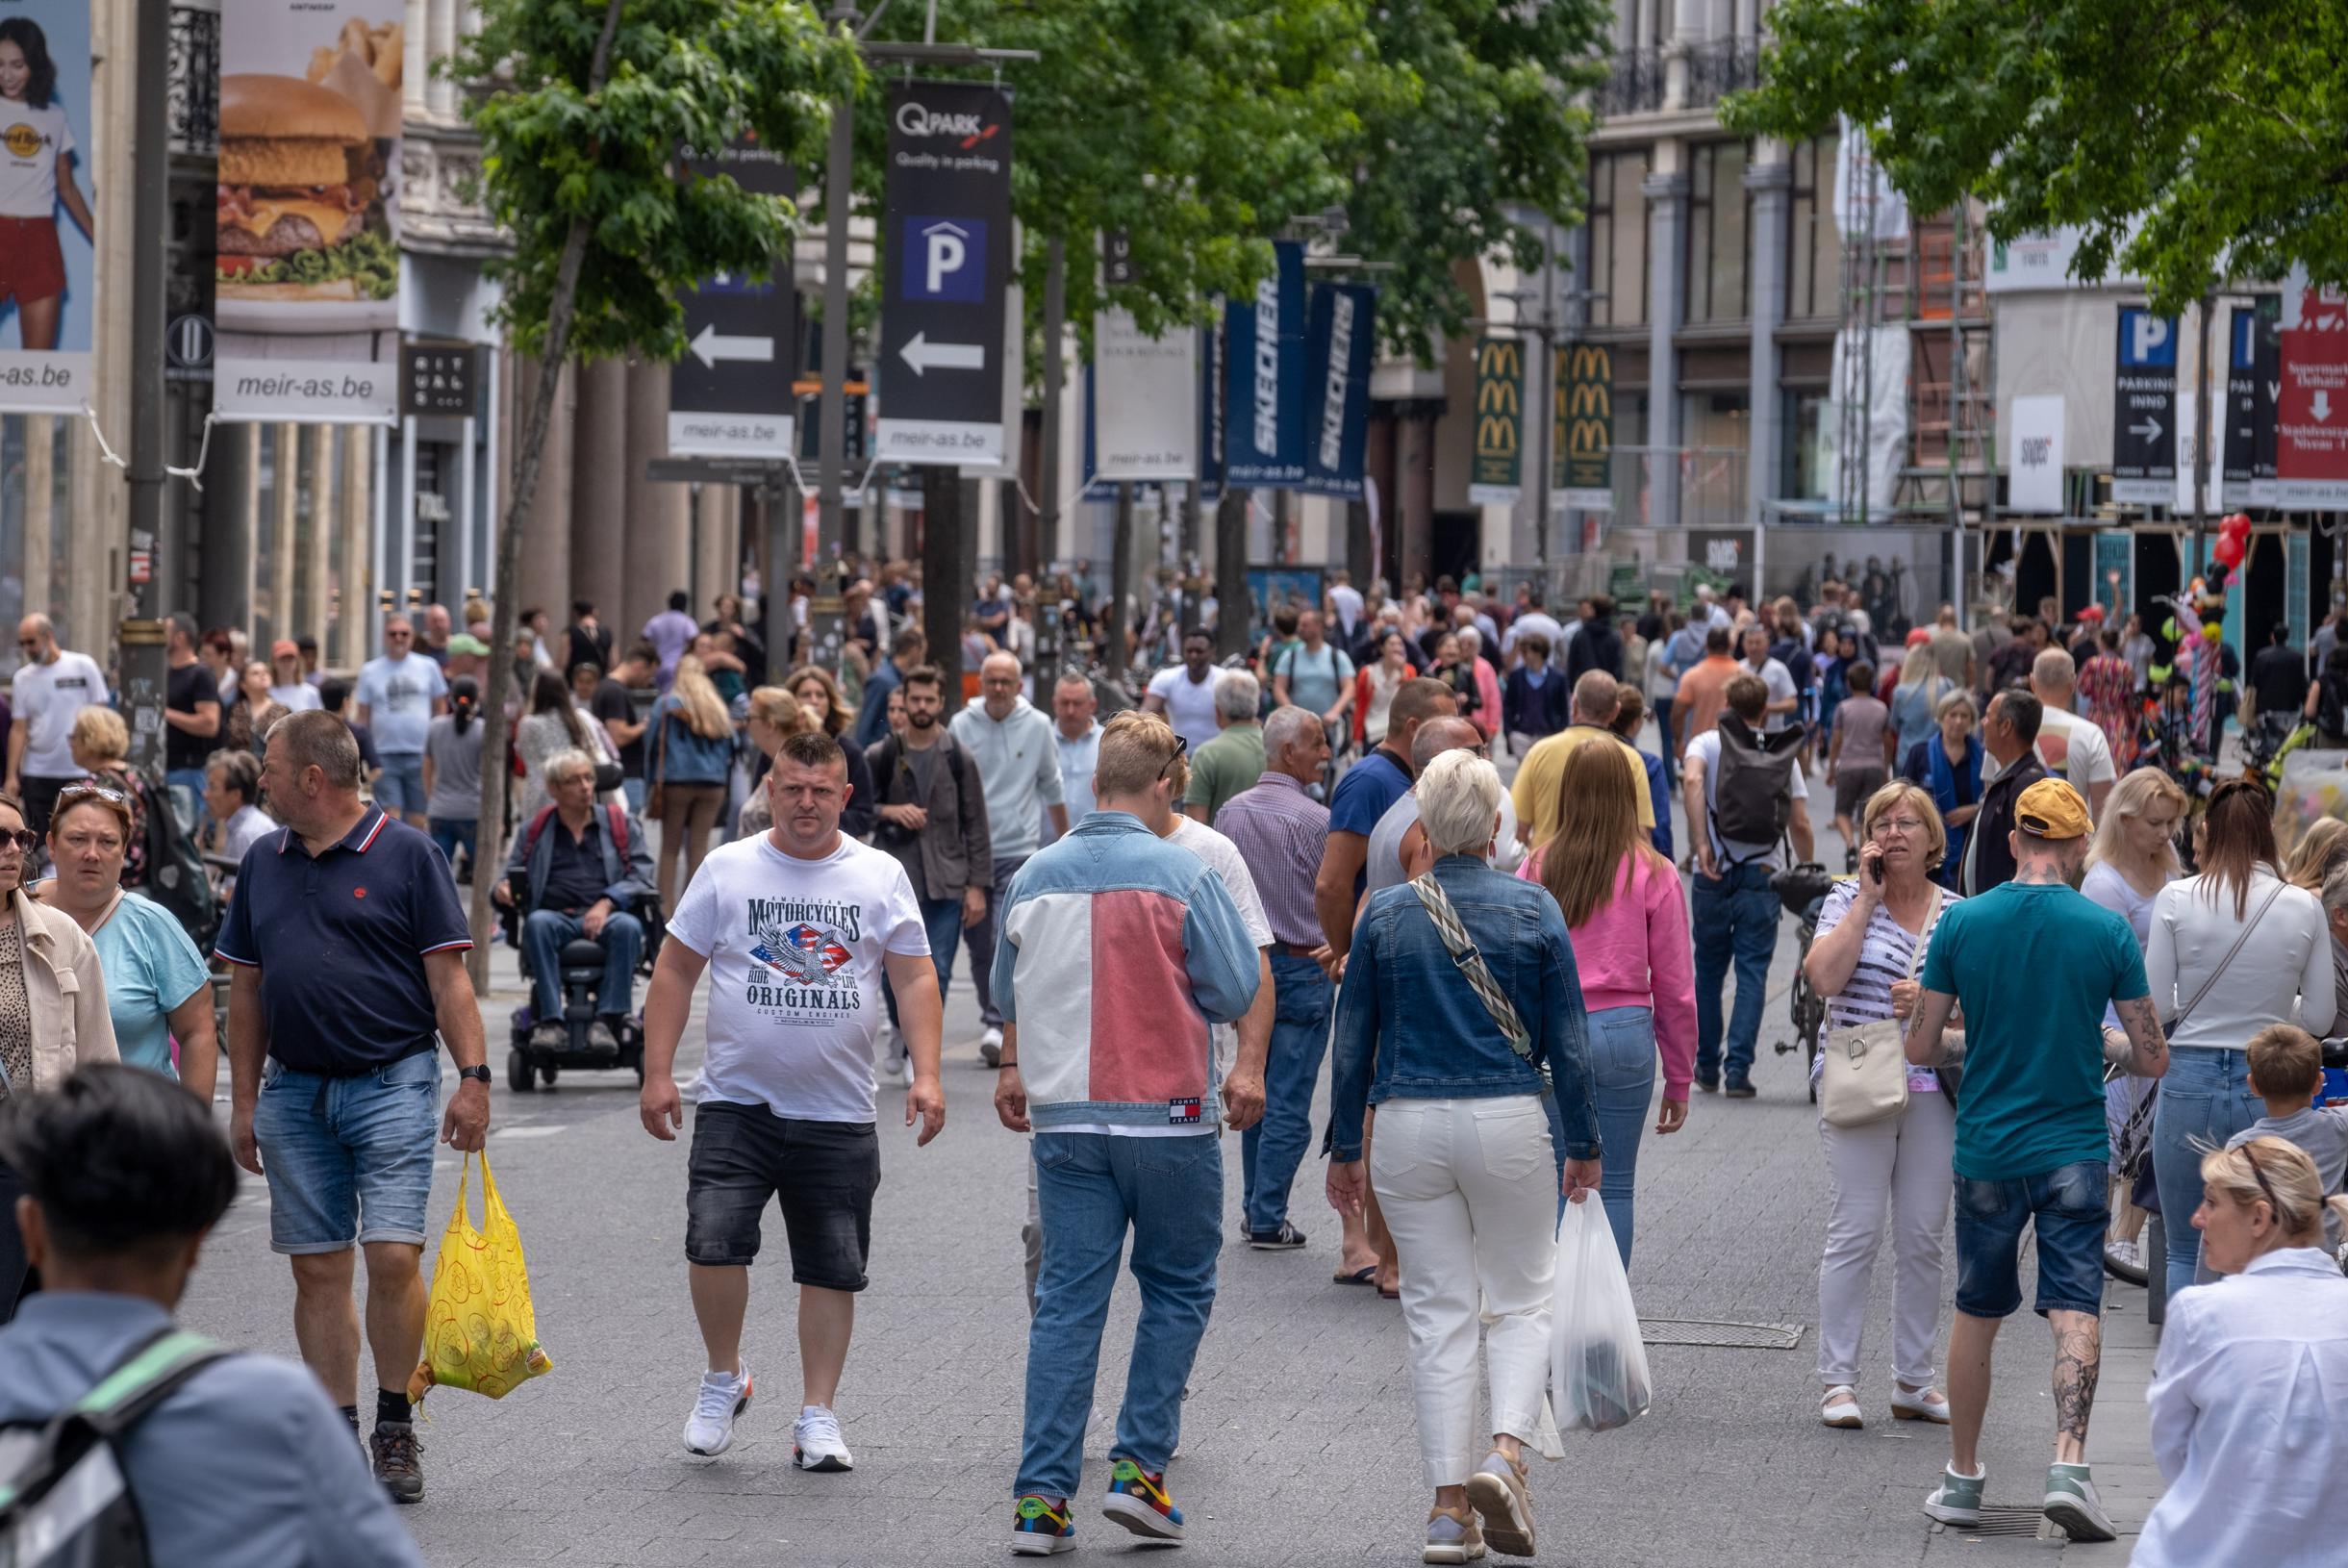 Распродажи в Антверпене уже начинаются в воскресенье: «Быстро купите бикини в этот праздничный сезон» (Антверпен)